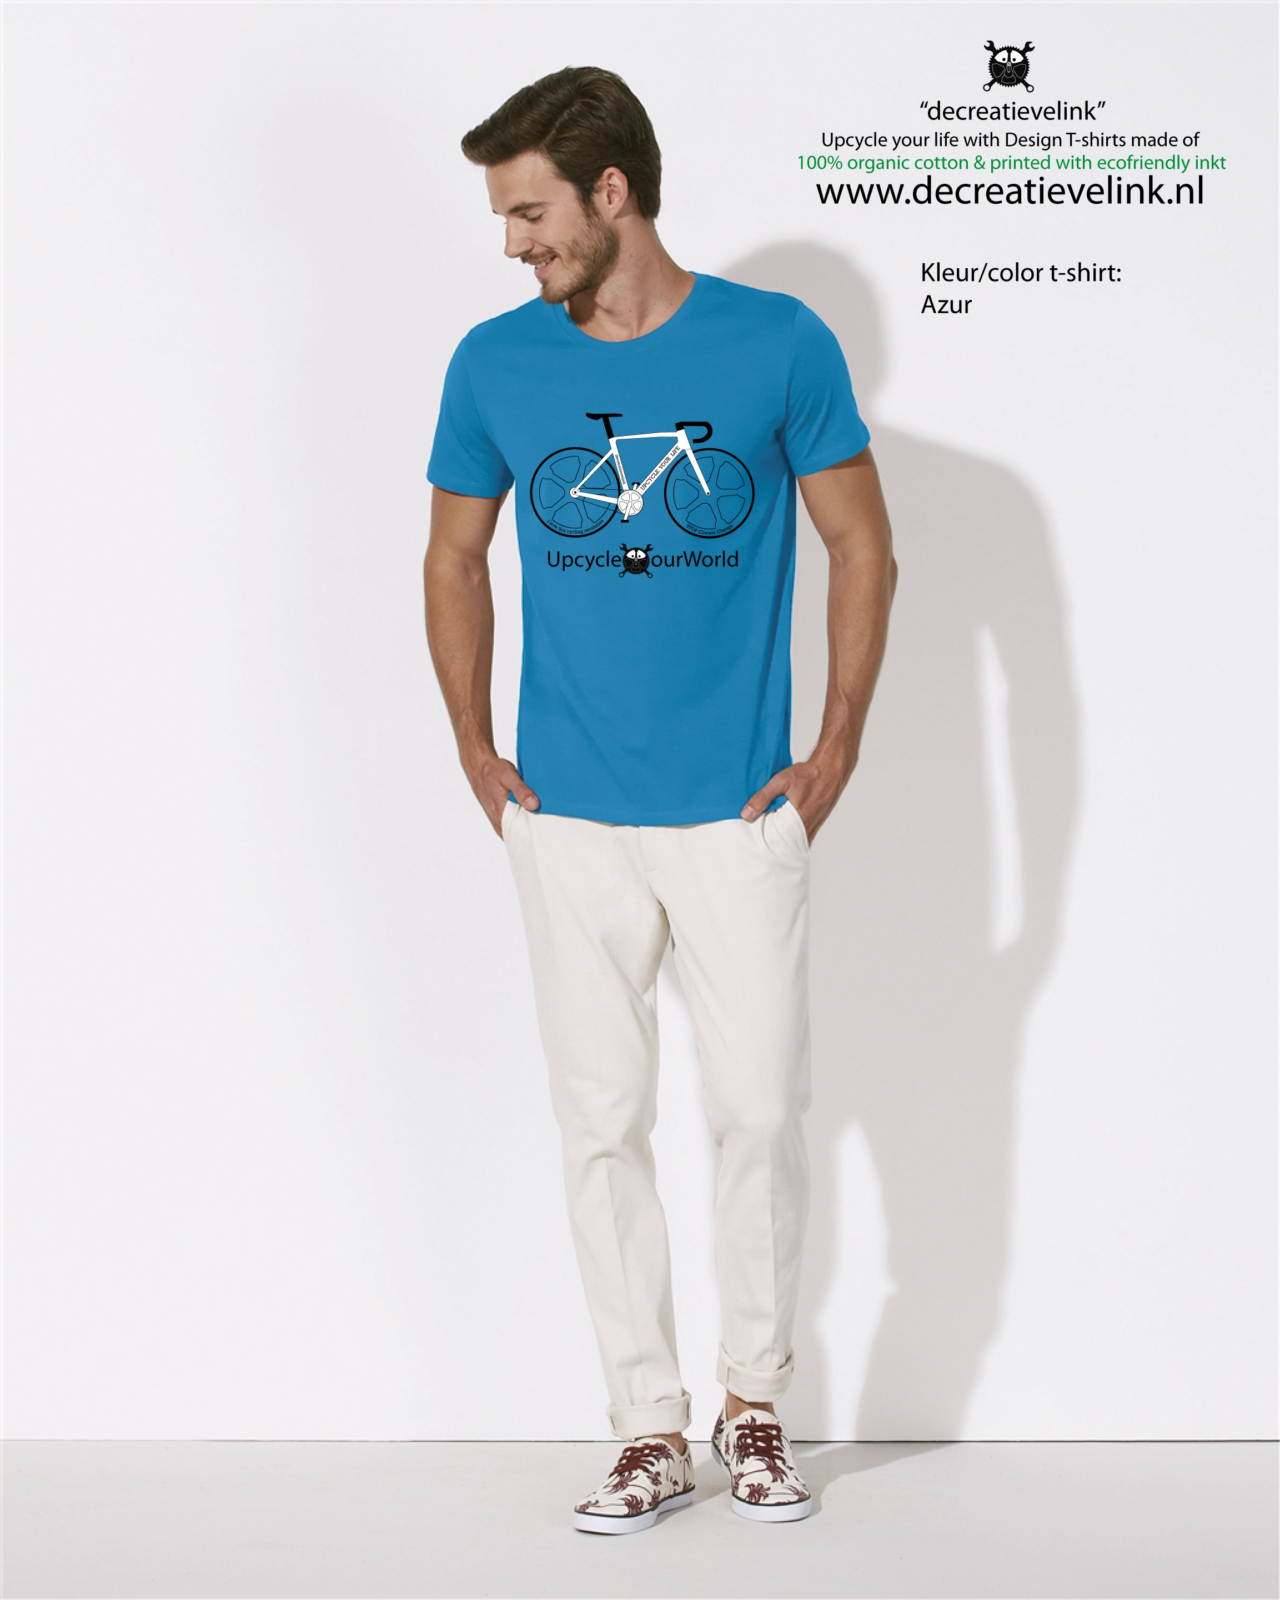 Decreatievelink Fair Wear T-shirt Kleur Azur